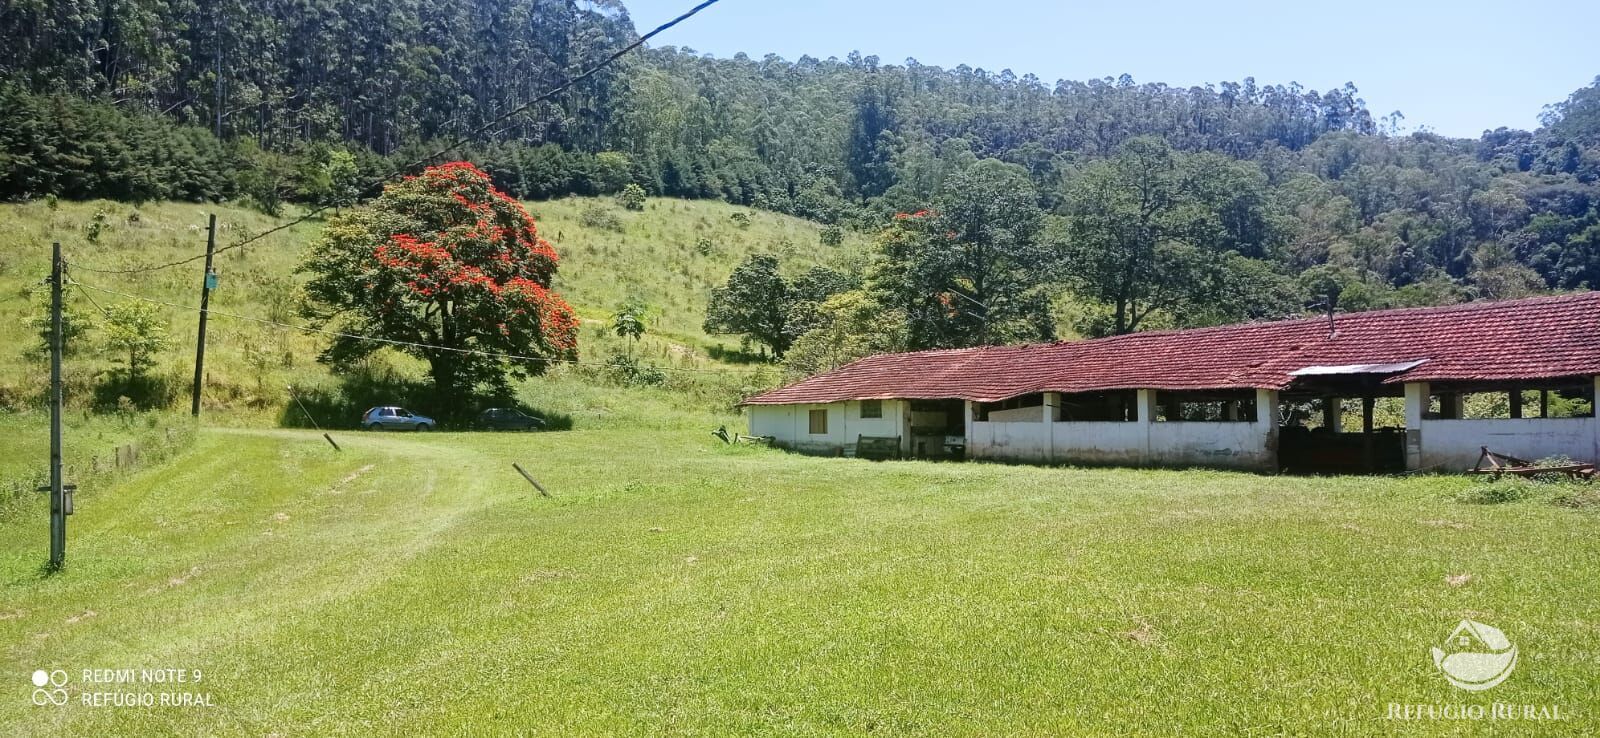 Fazenda de 150 ha em São José dos Campos, SP